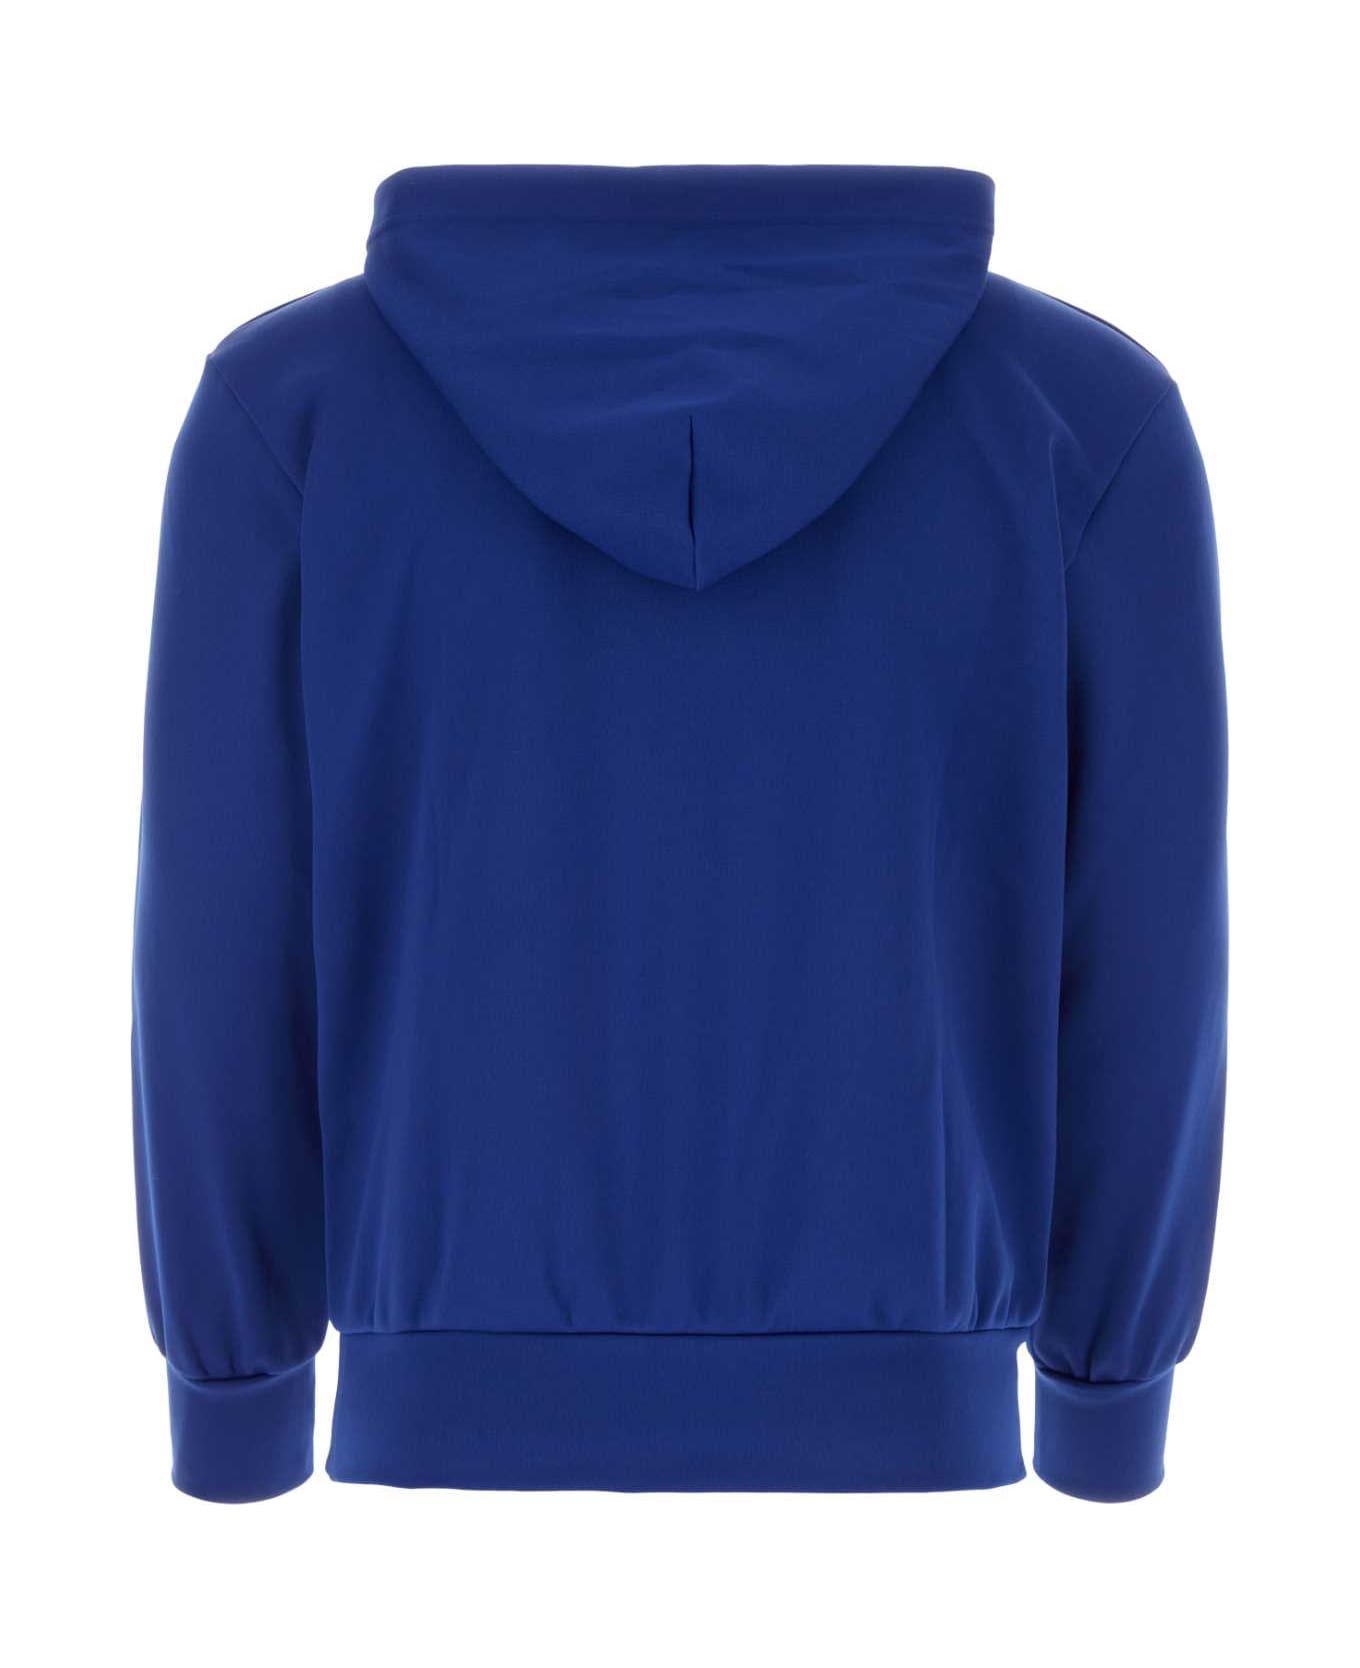 Comme des Garçons Play Blue Polyester Sweatshirt - NAVY フリース